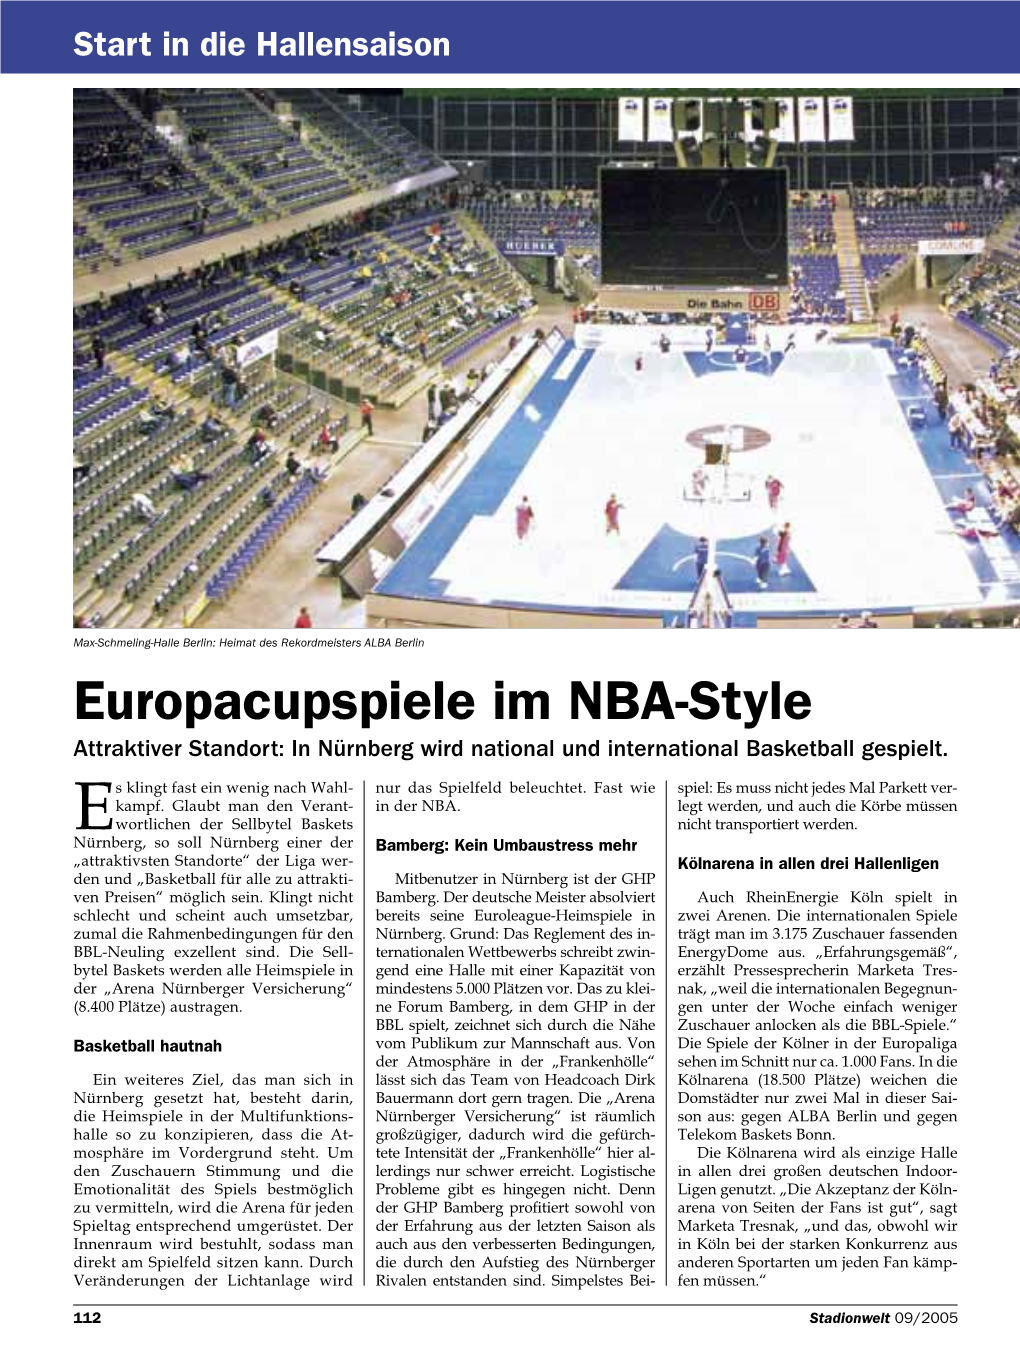 Europacupspiele Im NBA-Style Attraktiver Standort: in Nürnberg Wird National Und International Basketball Gespielt